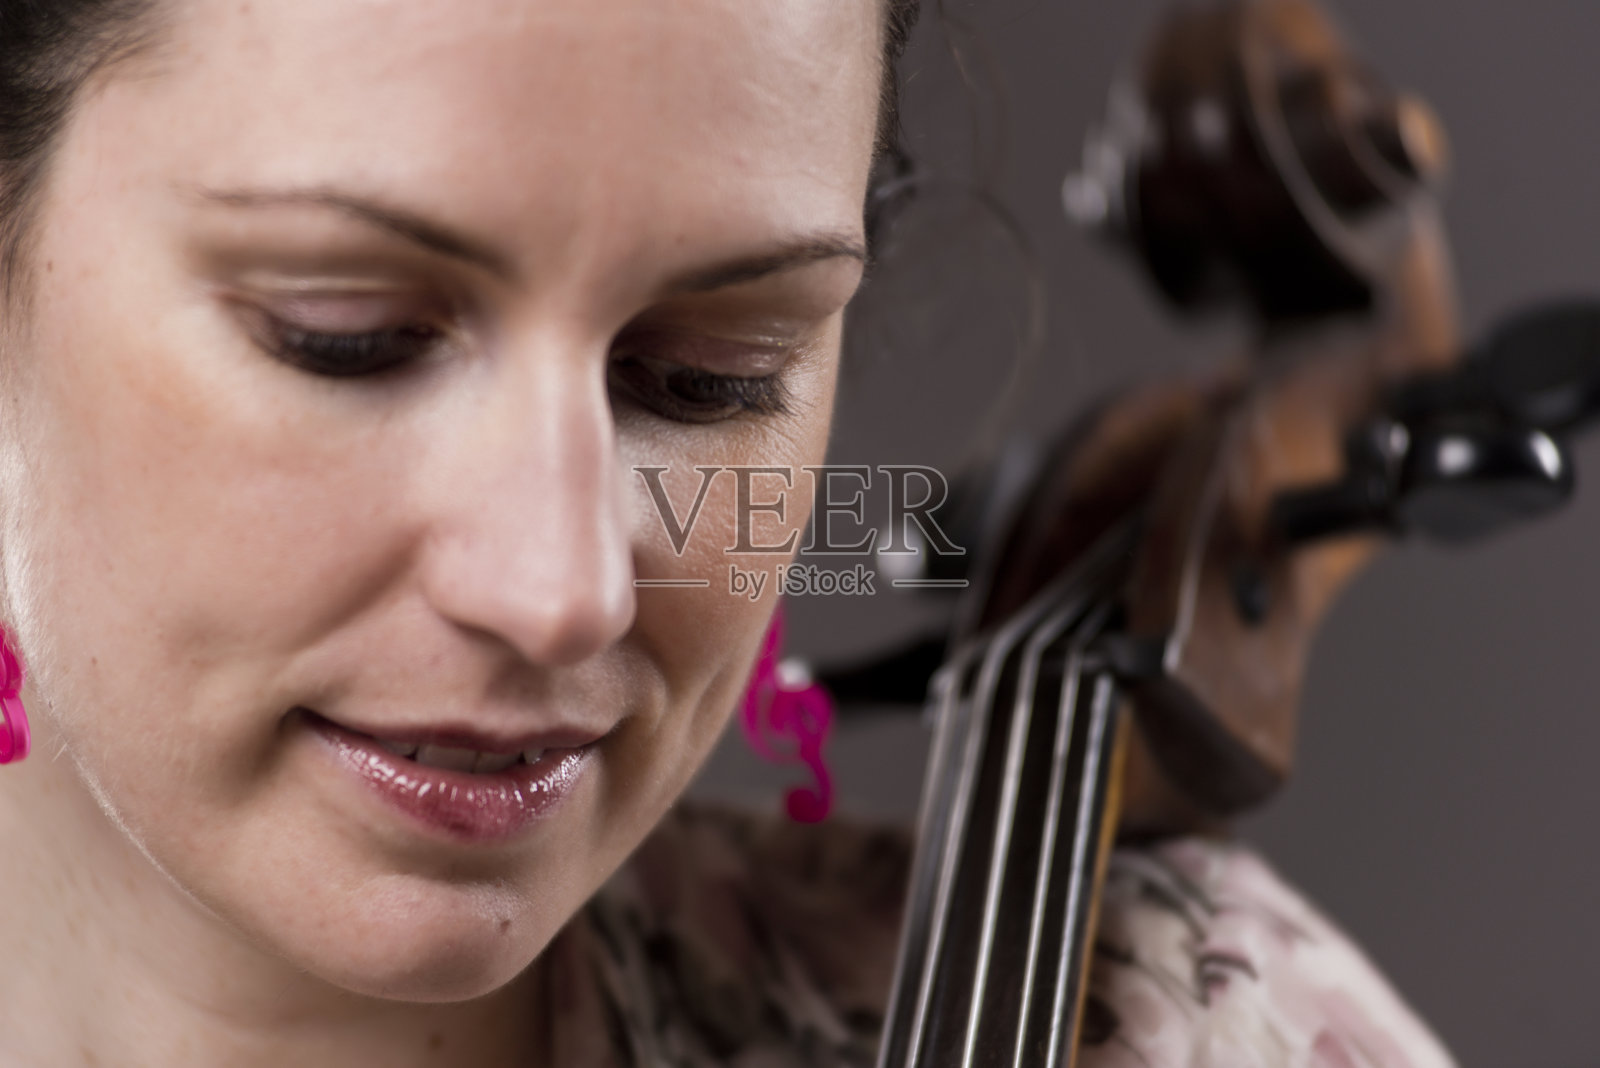 一个美丽的黑发热情的女性大提琴手的特写肖像照片摄影图片